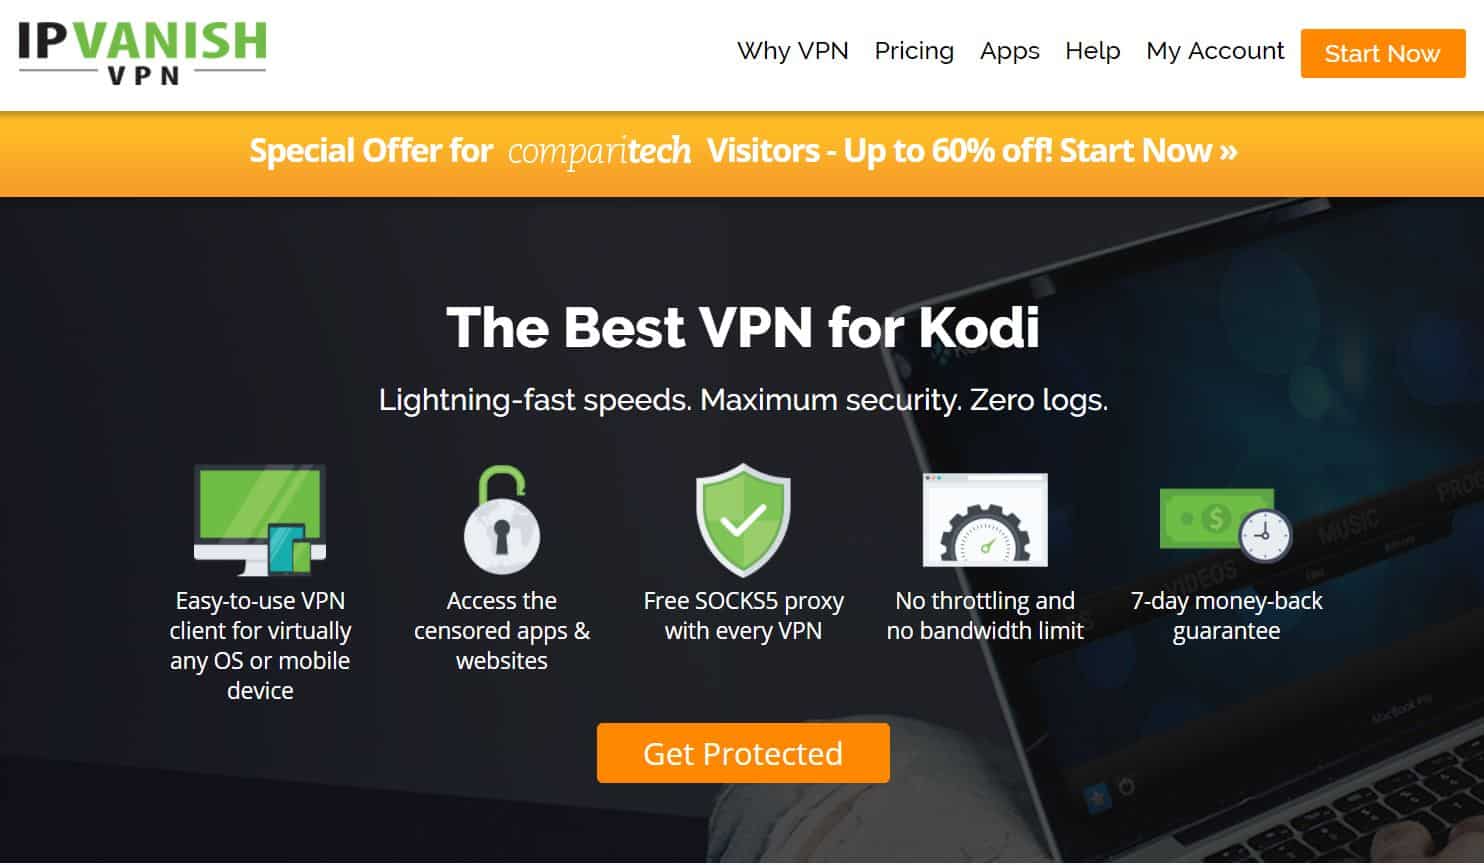 IPVanish for Kodi users